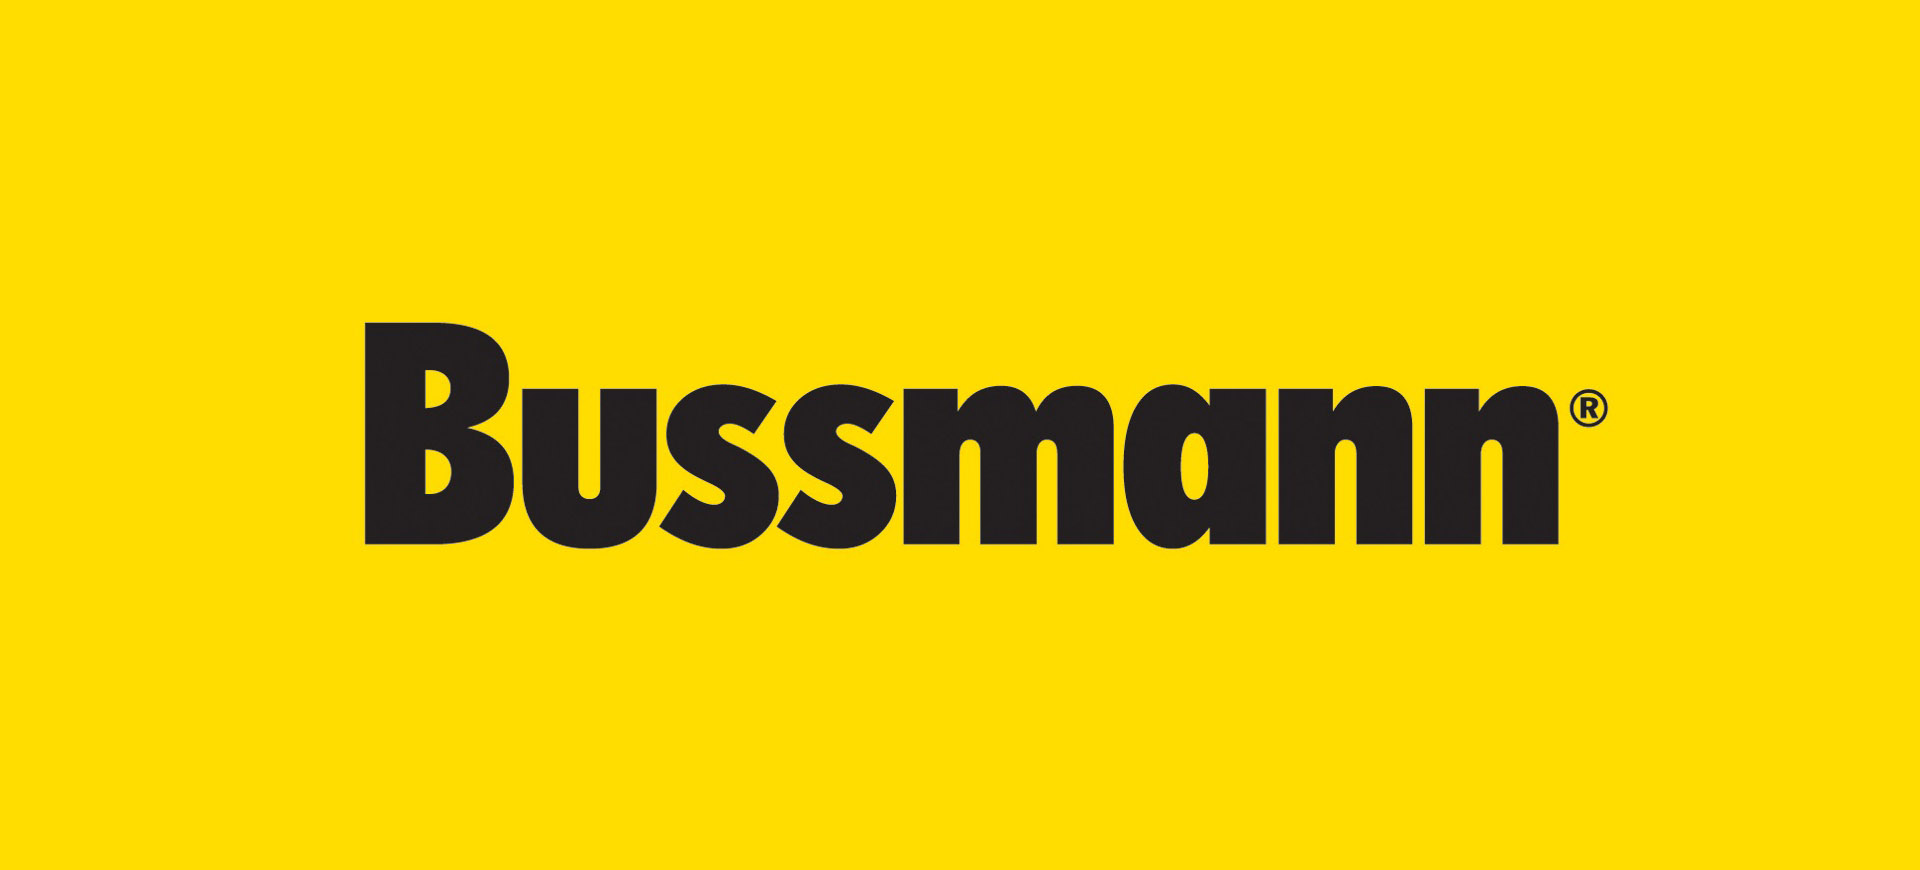 فیوز بوسمان Bussmann